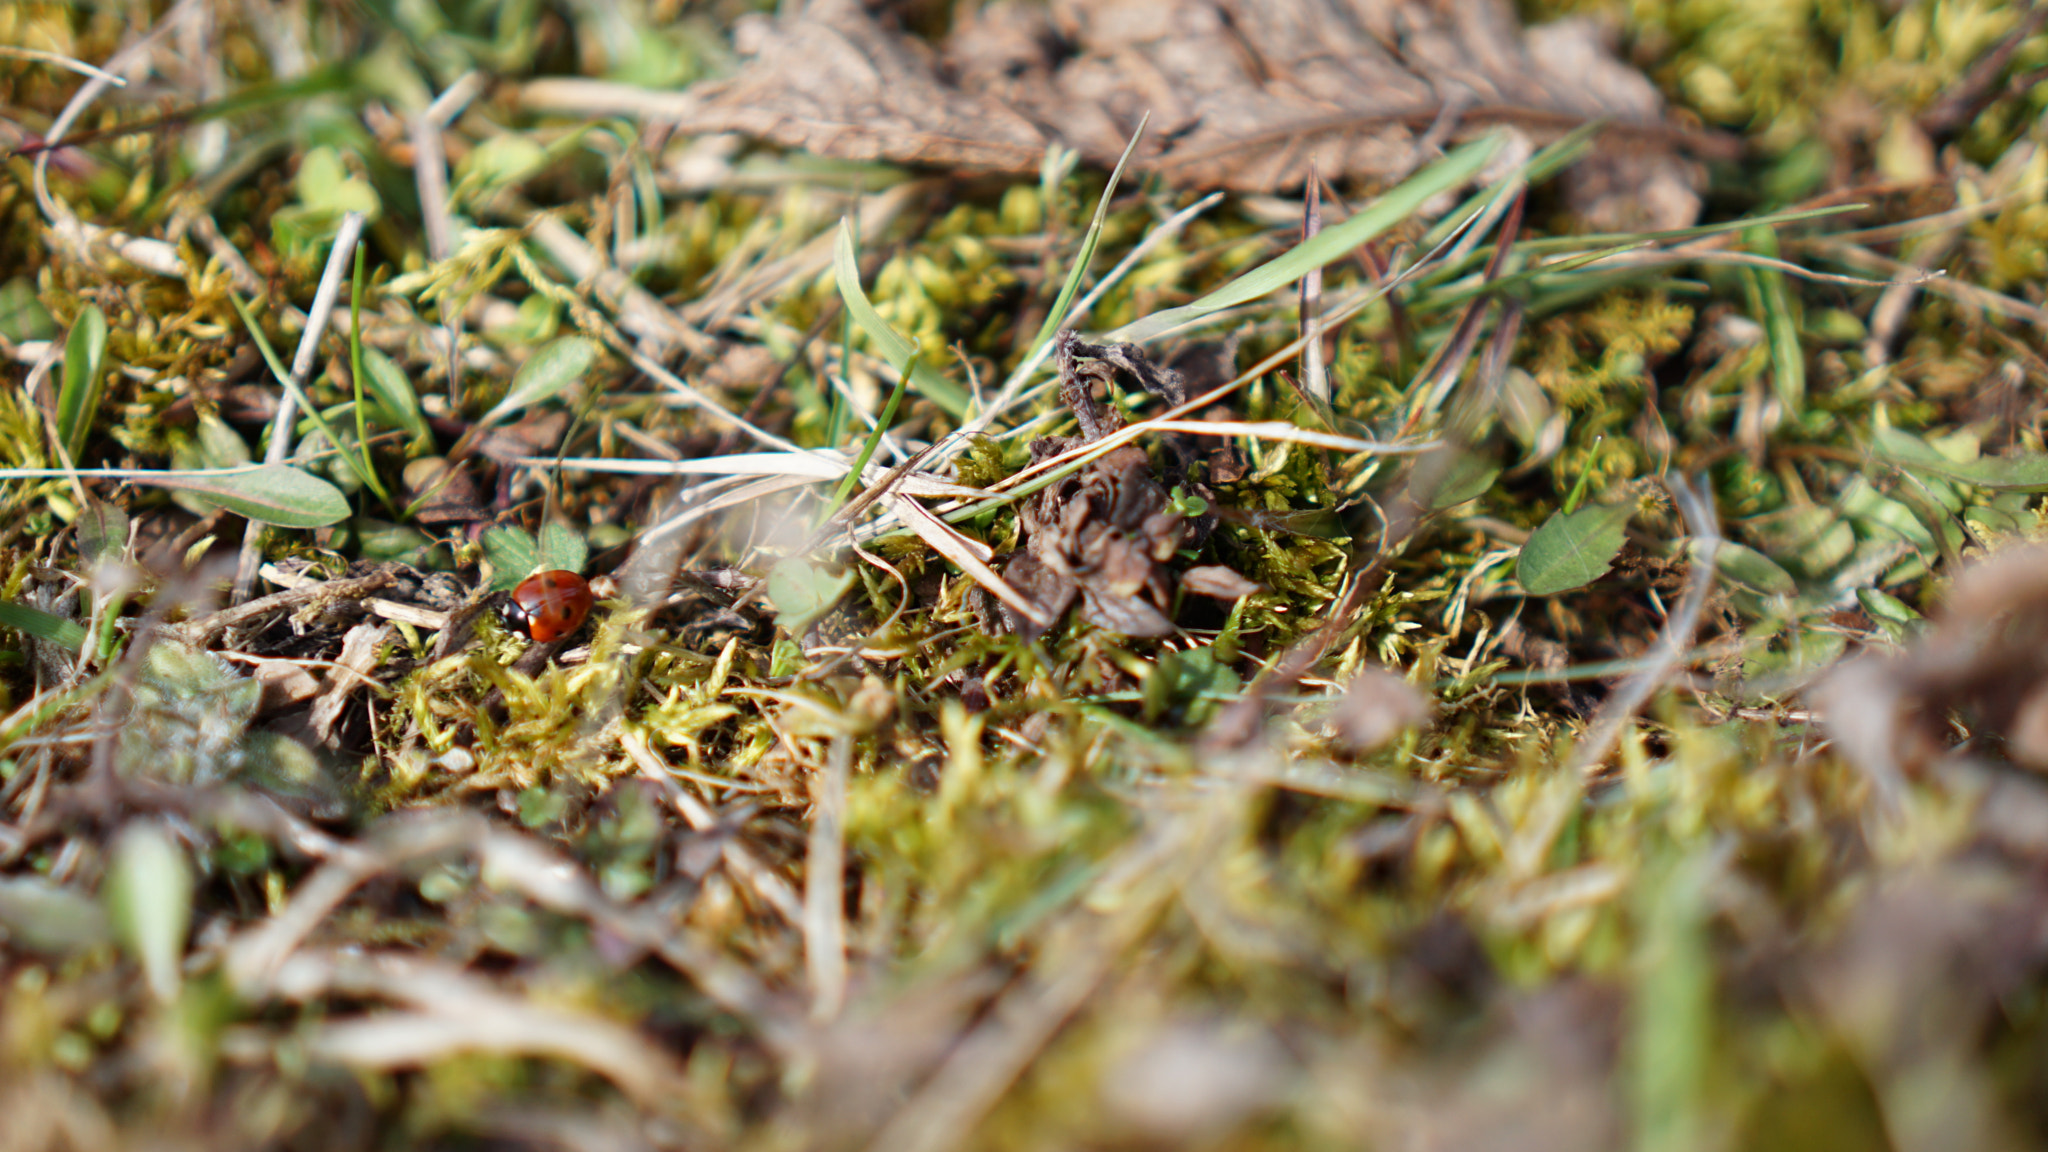 Sony E 35mm F1.8 OSS sample photo. Ladybug waking up for spring photography